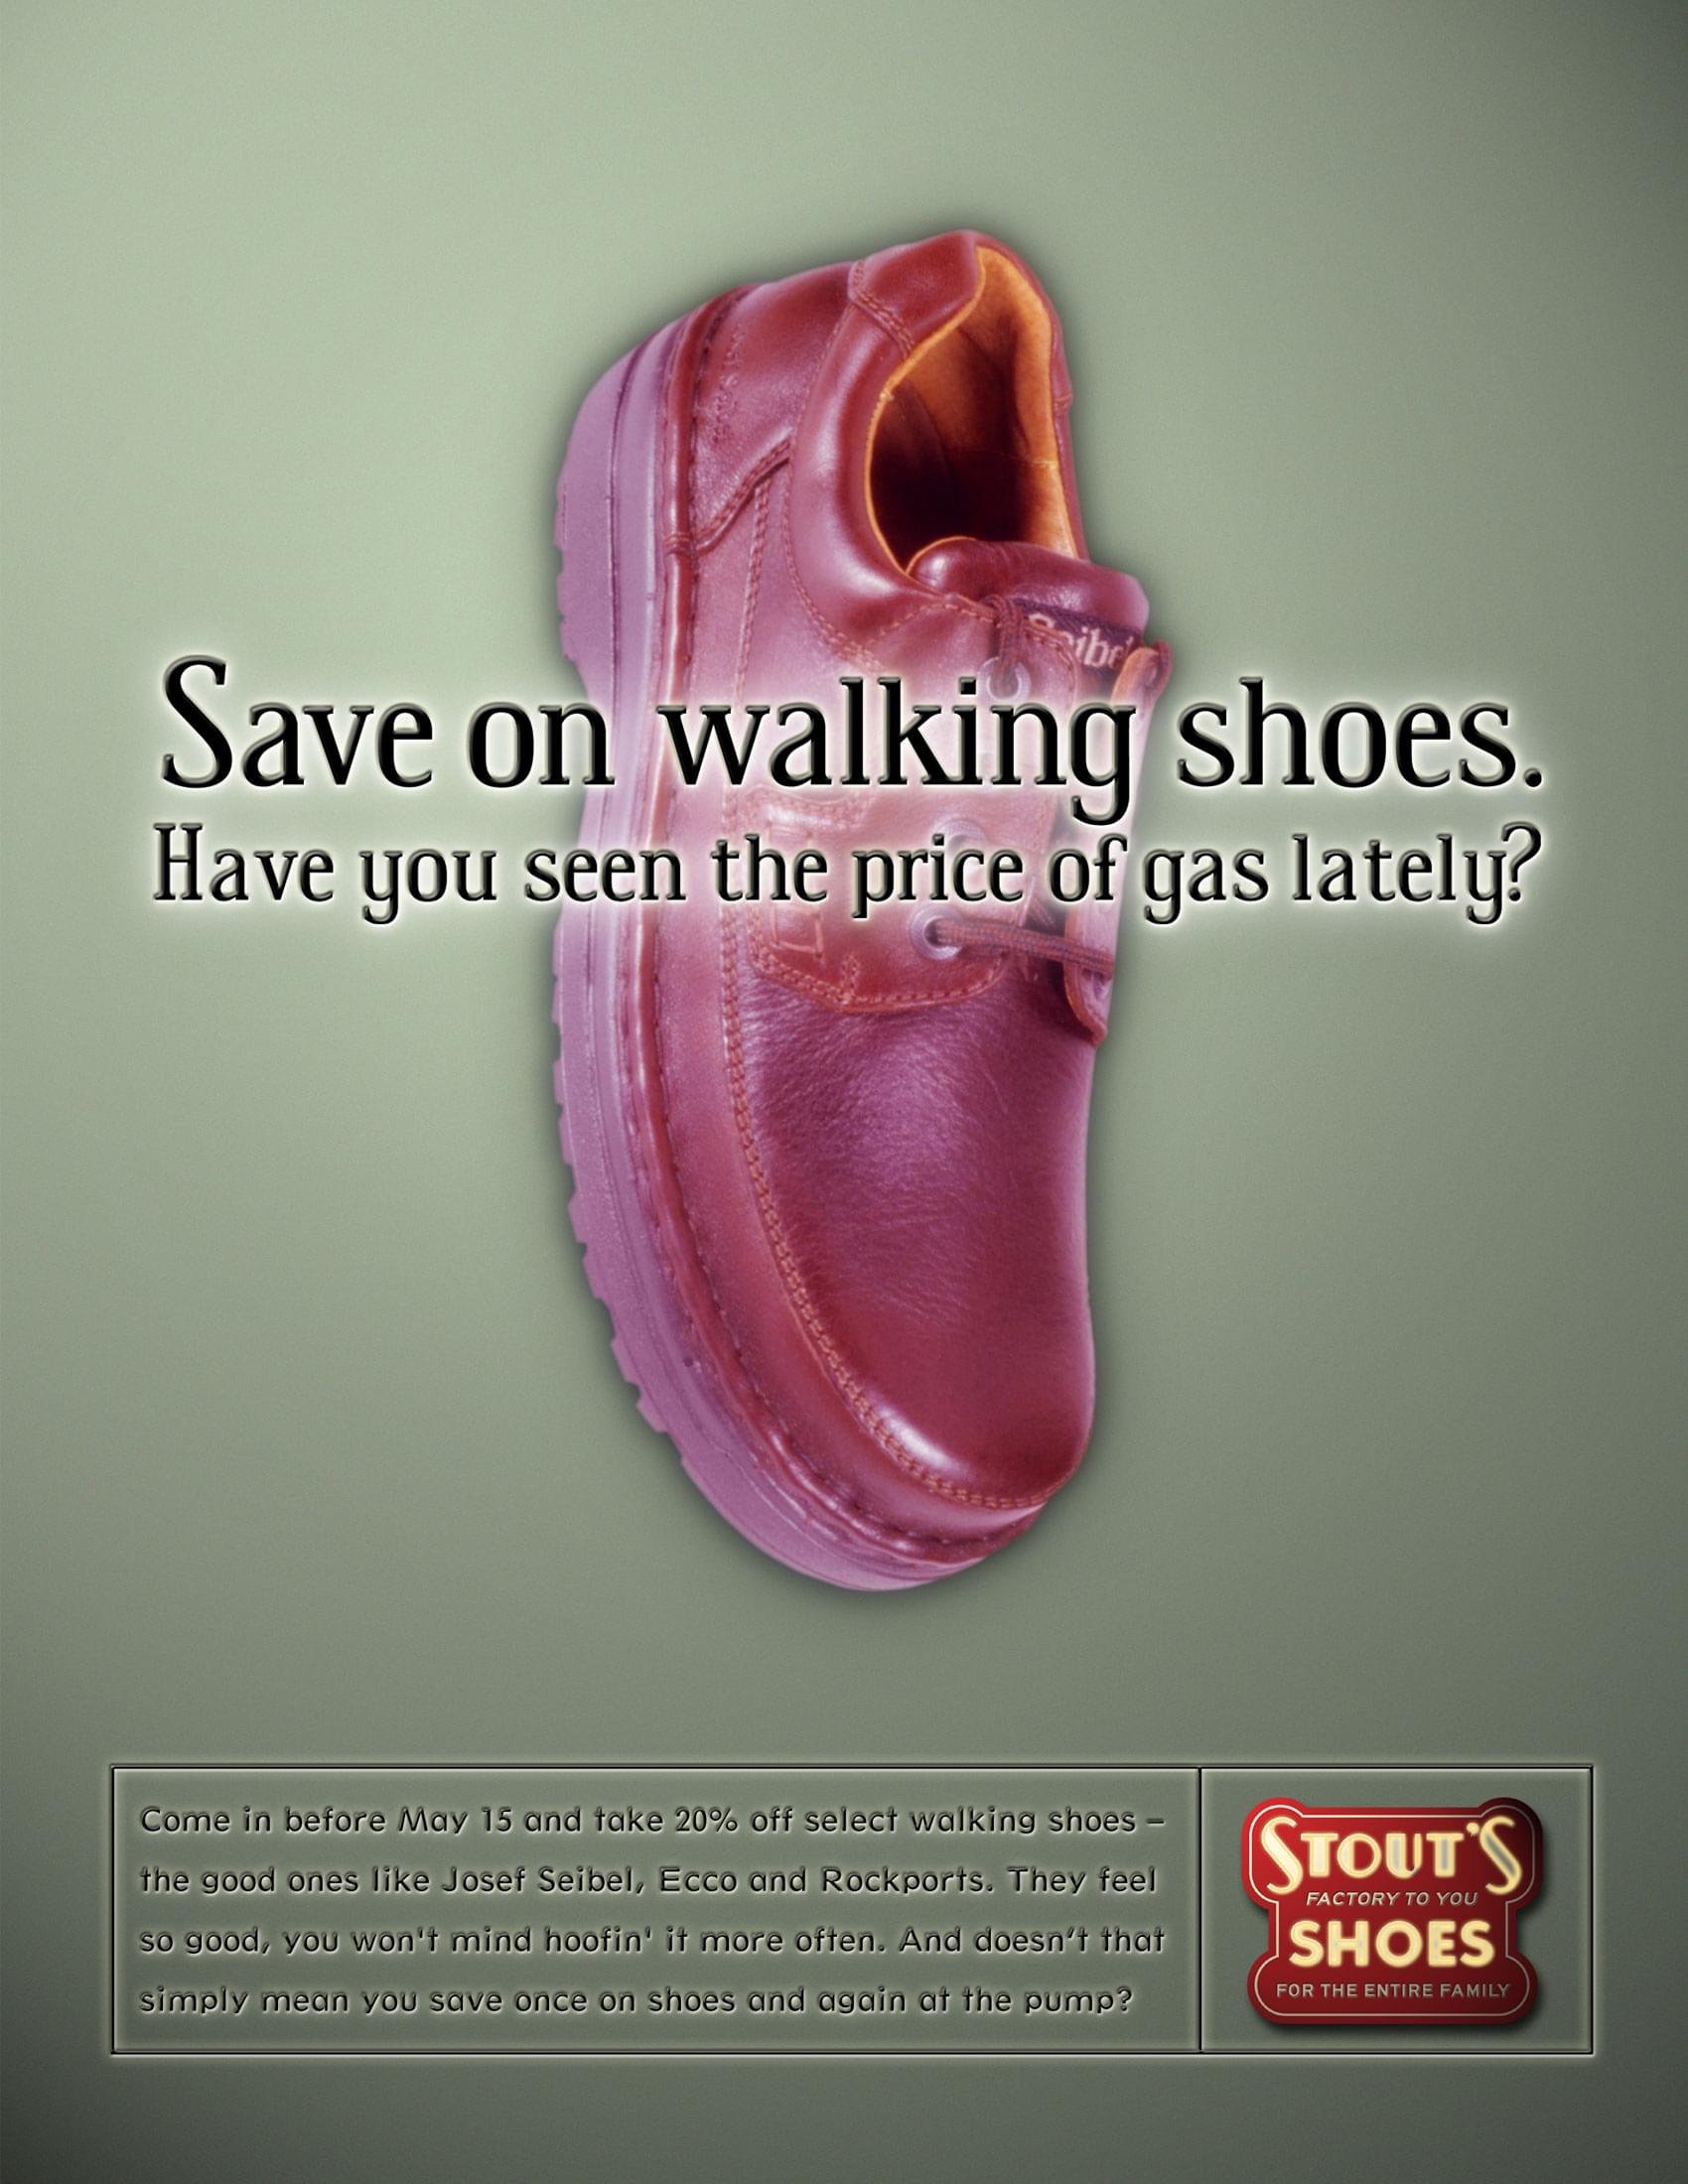 Stout’s Shoes Print Campaign